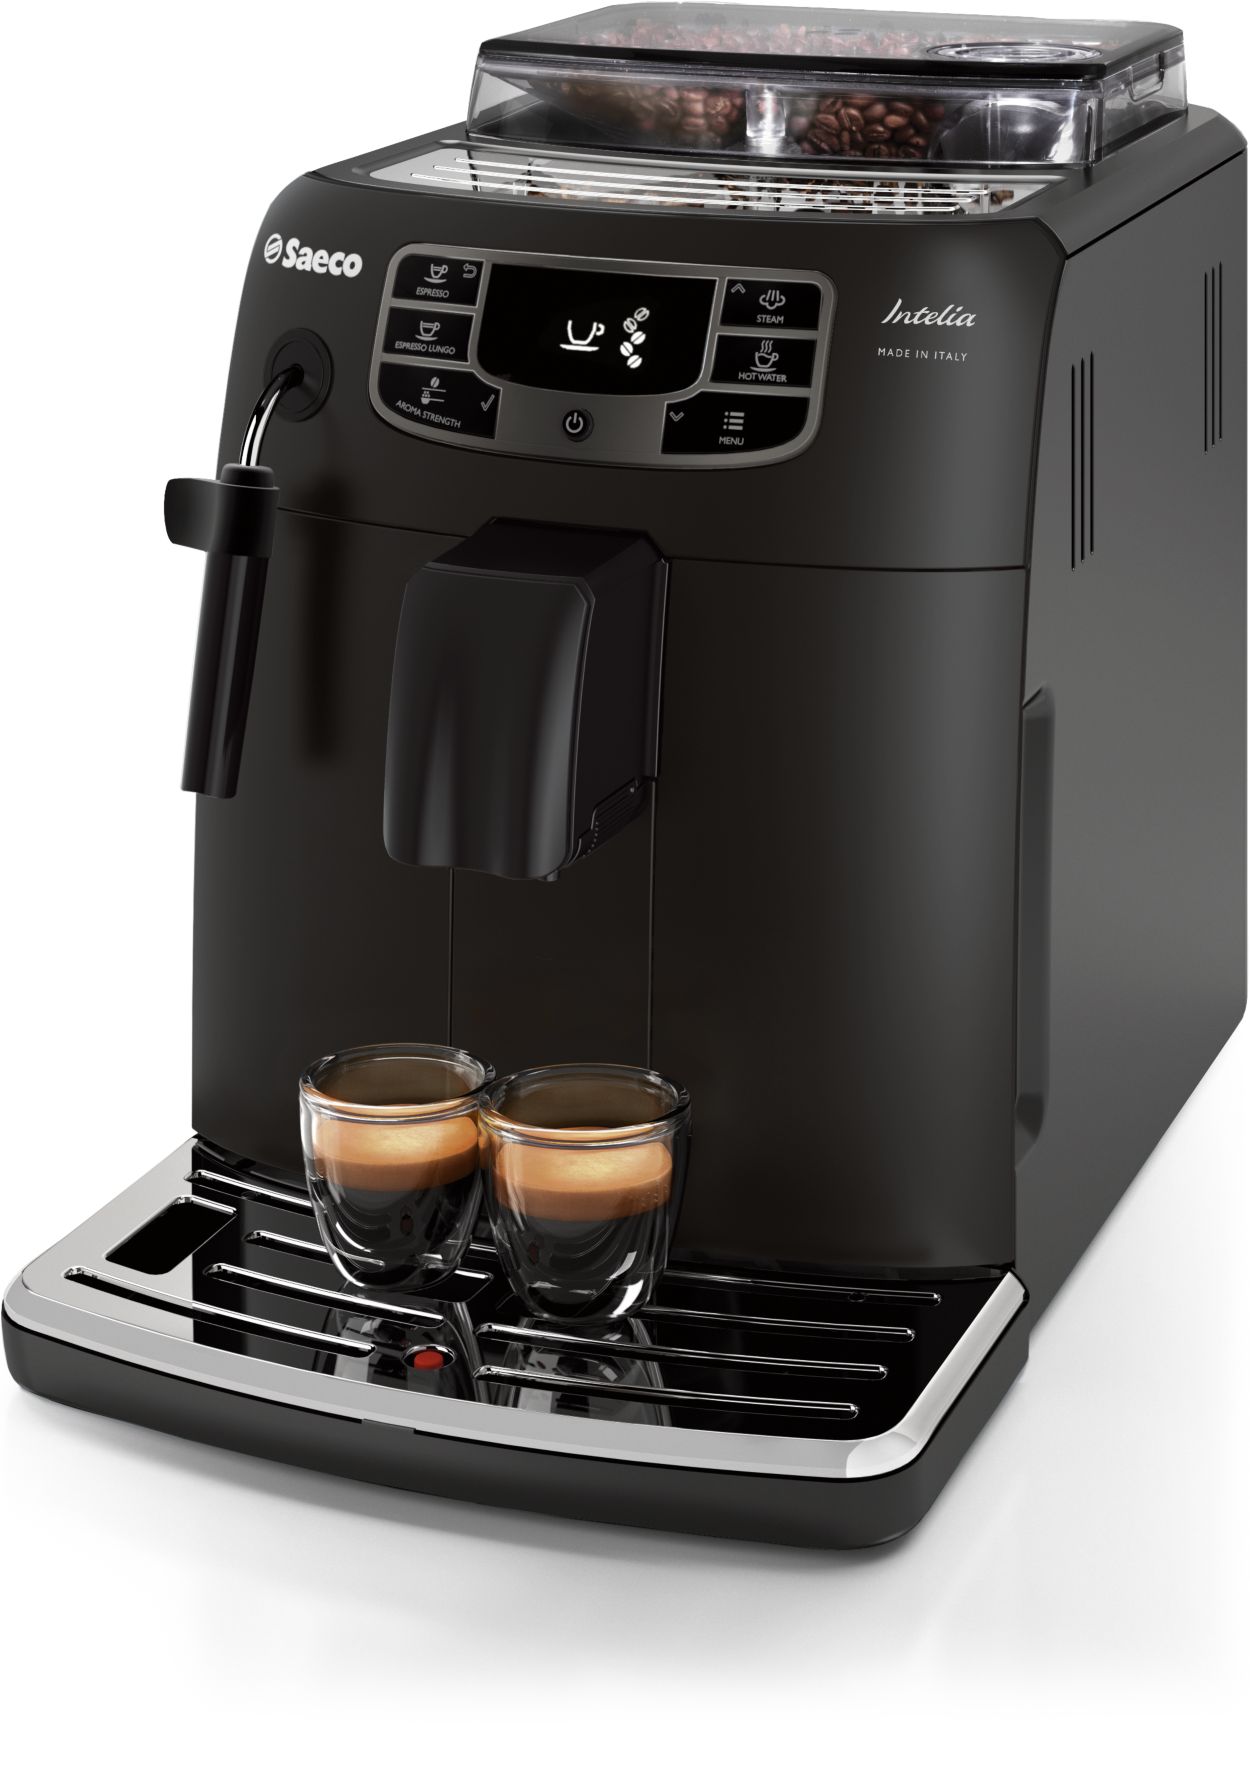 Intelia Deluxe Superautomatic espresso machine HD8758/57 Saeco